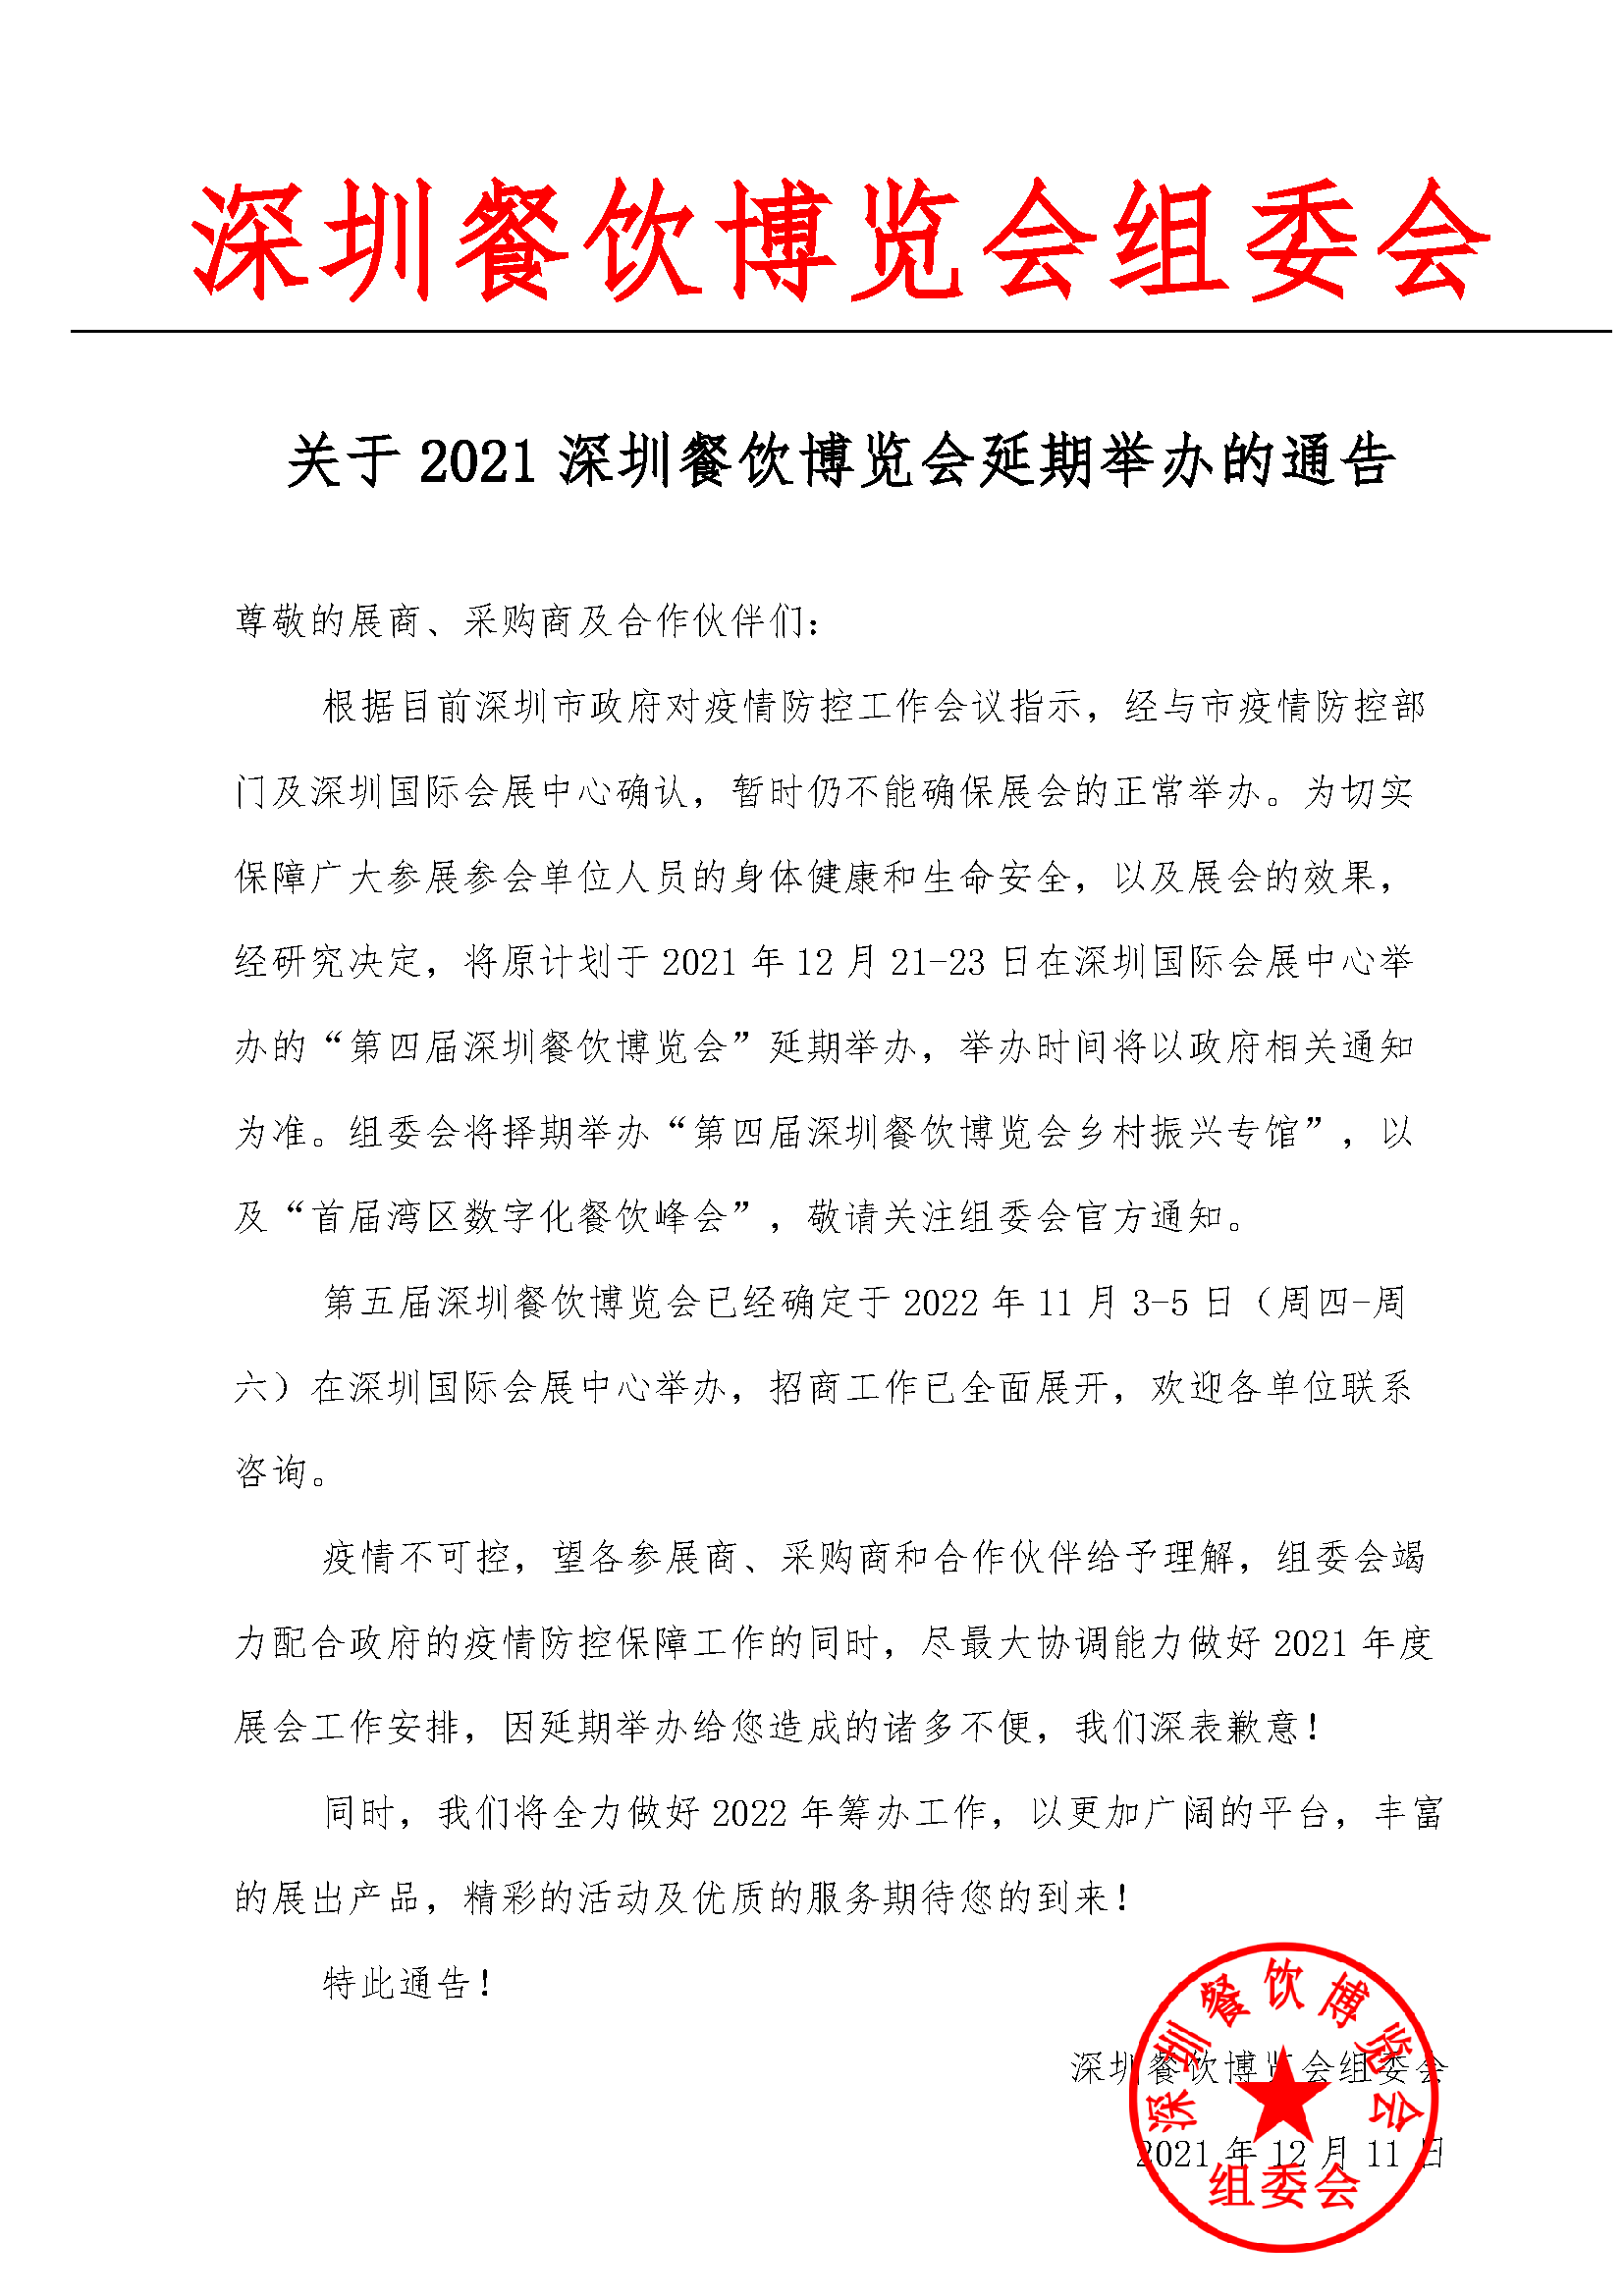 关于2021深圳餐饮博览会延期举办的通告.png